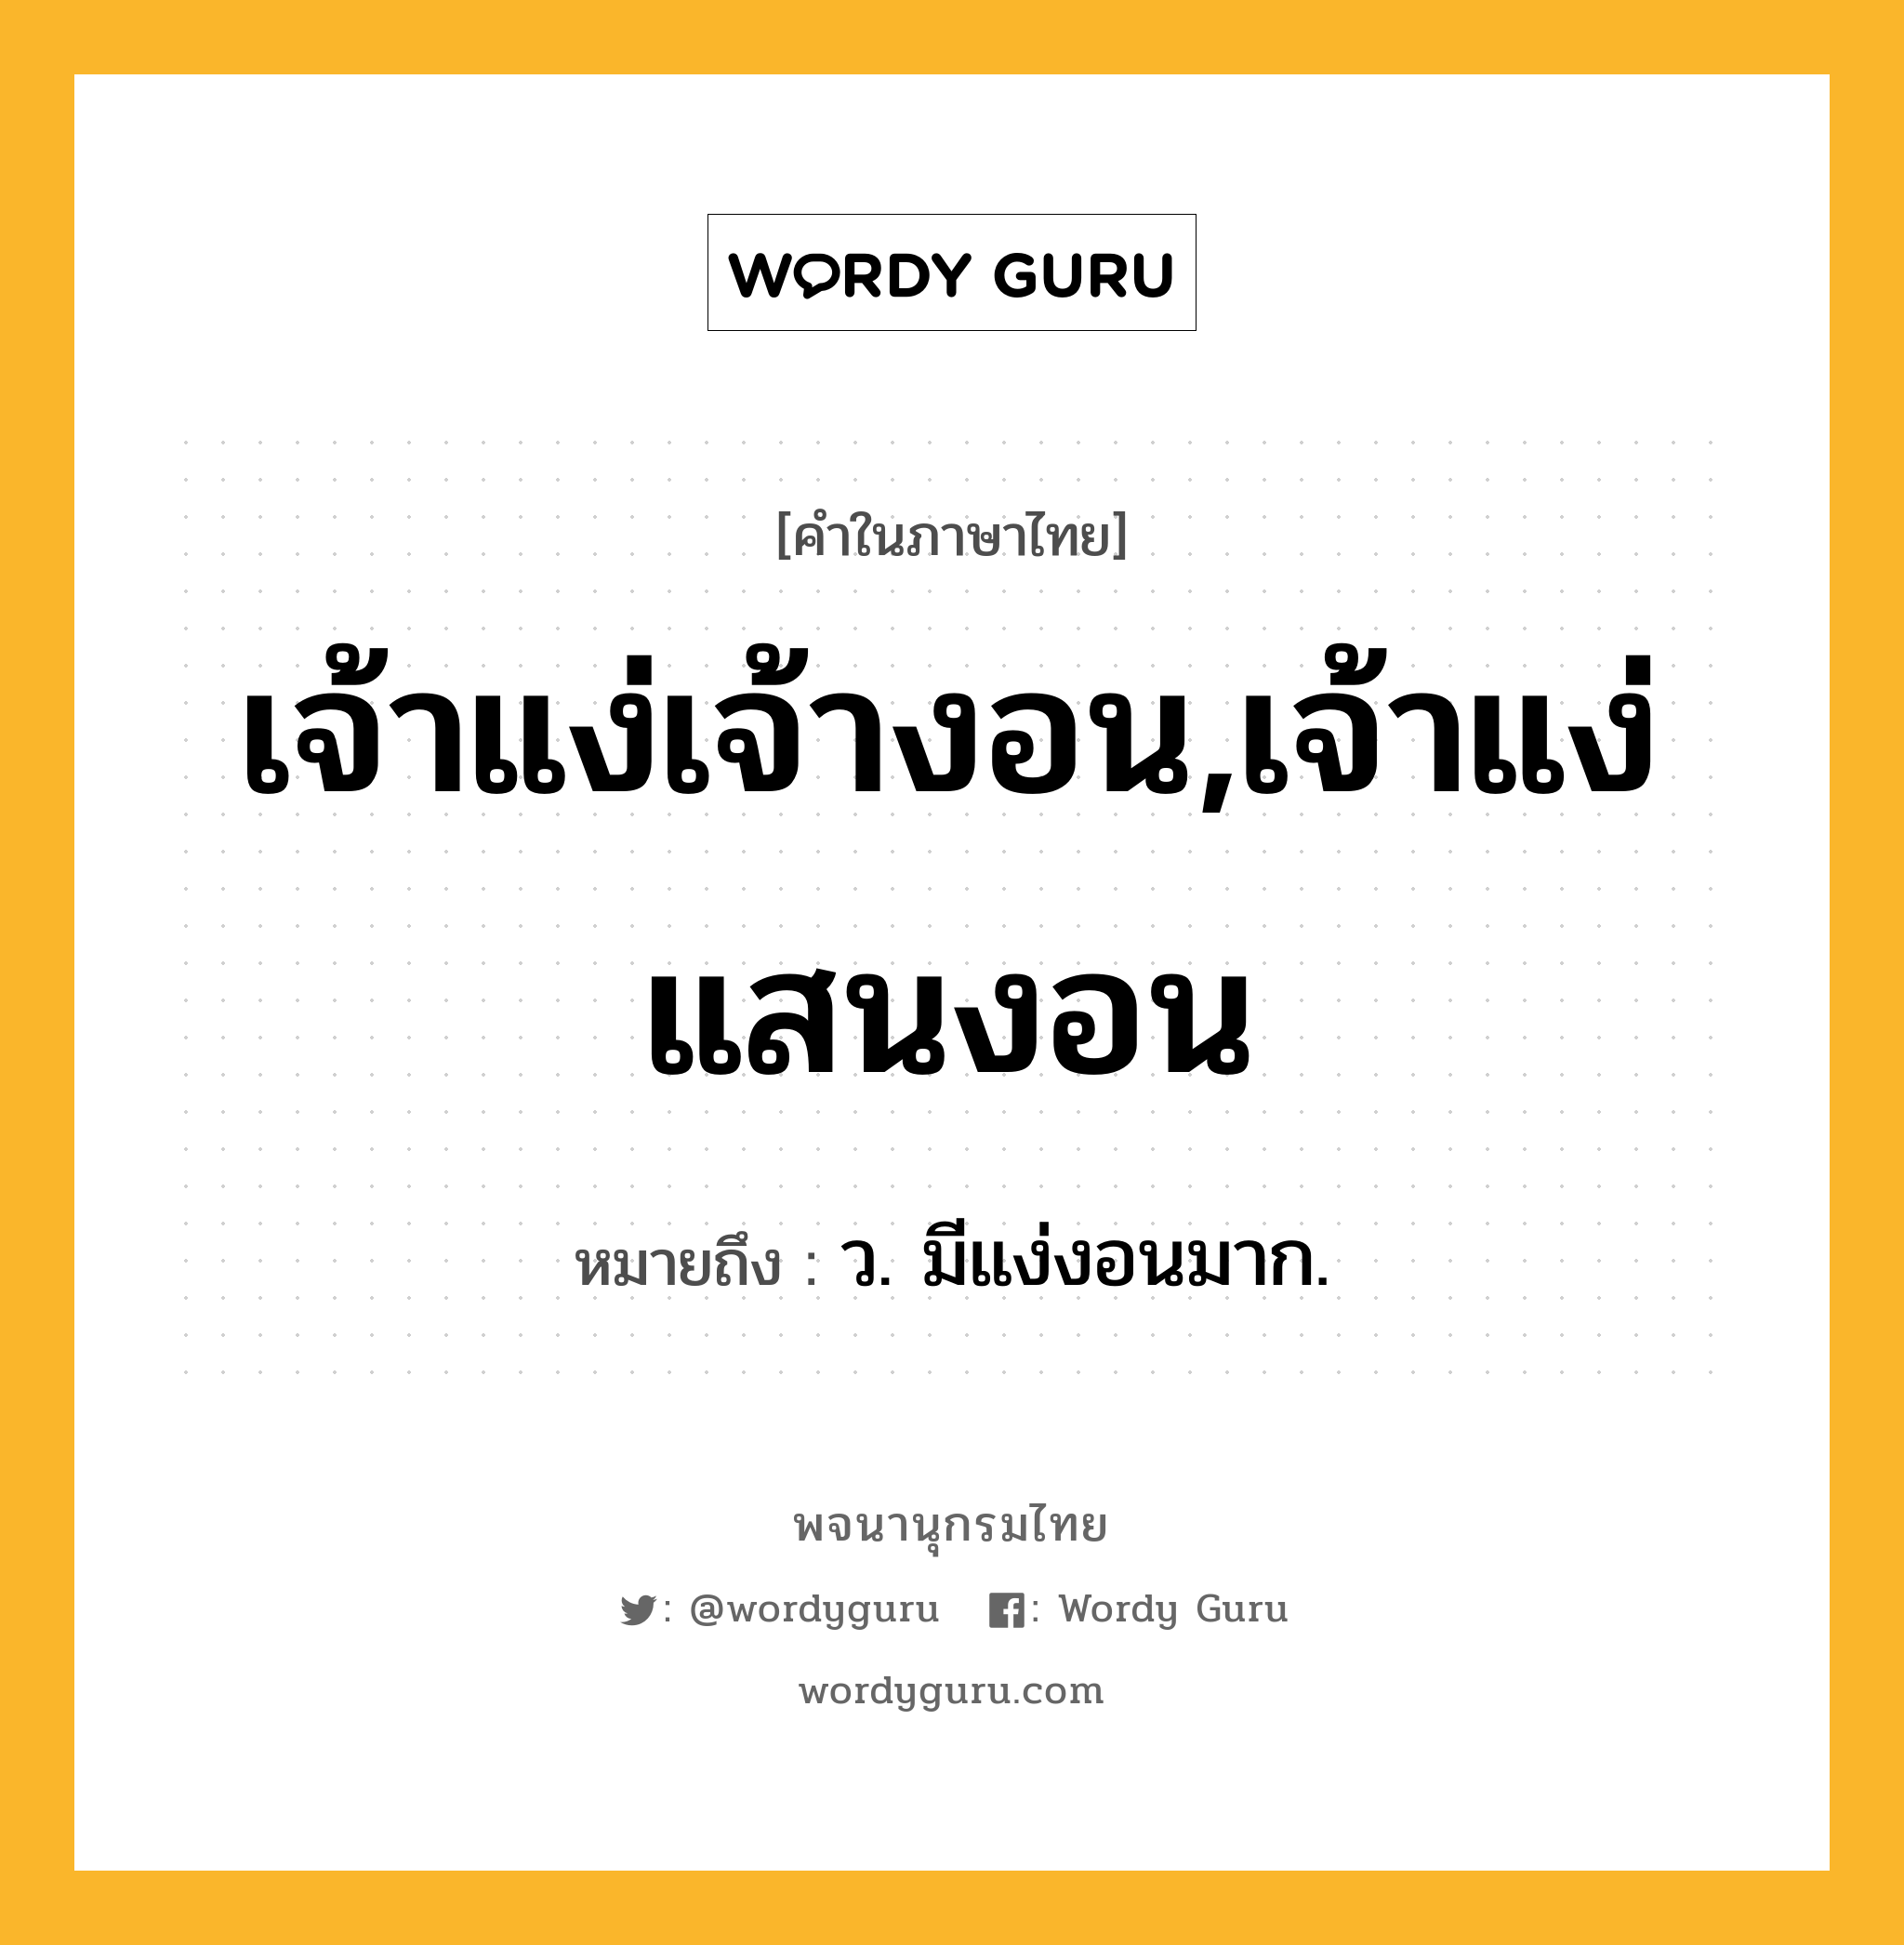 เจ้าแง่เจ้างอน,เจ้าแง่แสนงอน หมายถึงอะไร?, คำในภาษาไทย เจ้าแง่เจ้างอน,เจ้าแง่แสนงอน หมายถึง ว. มีแง่งอนมาก.